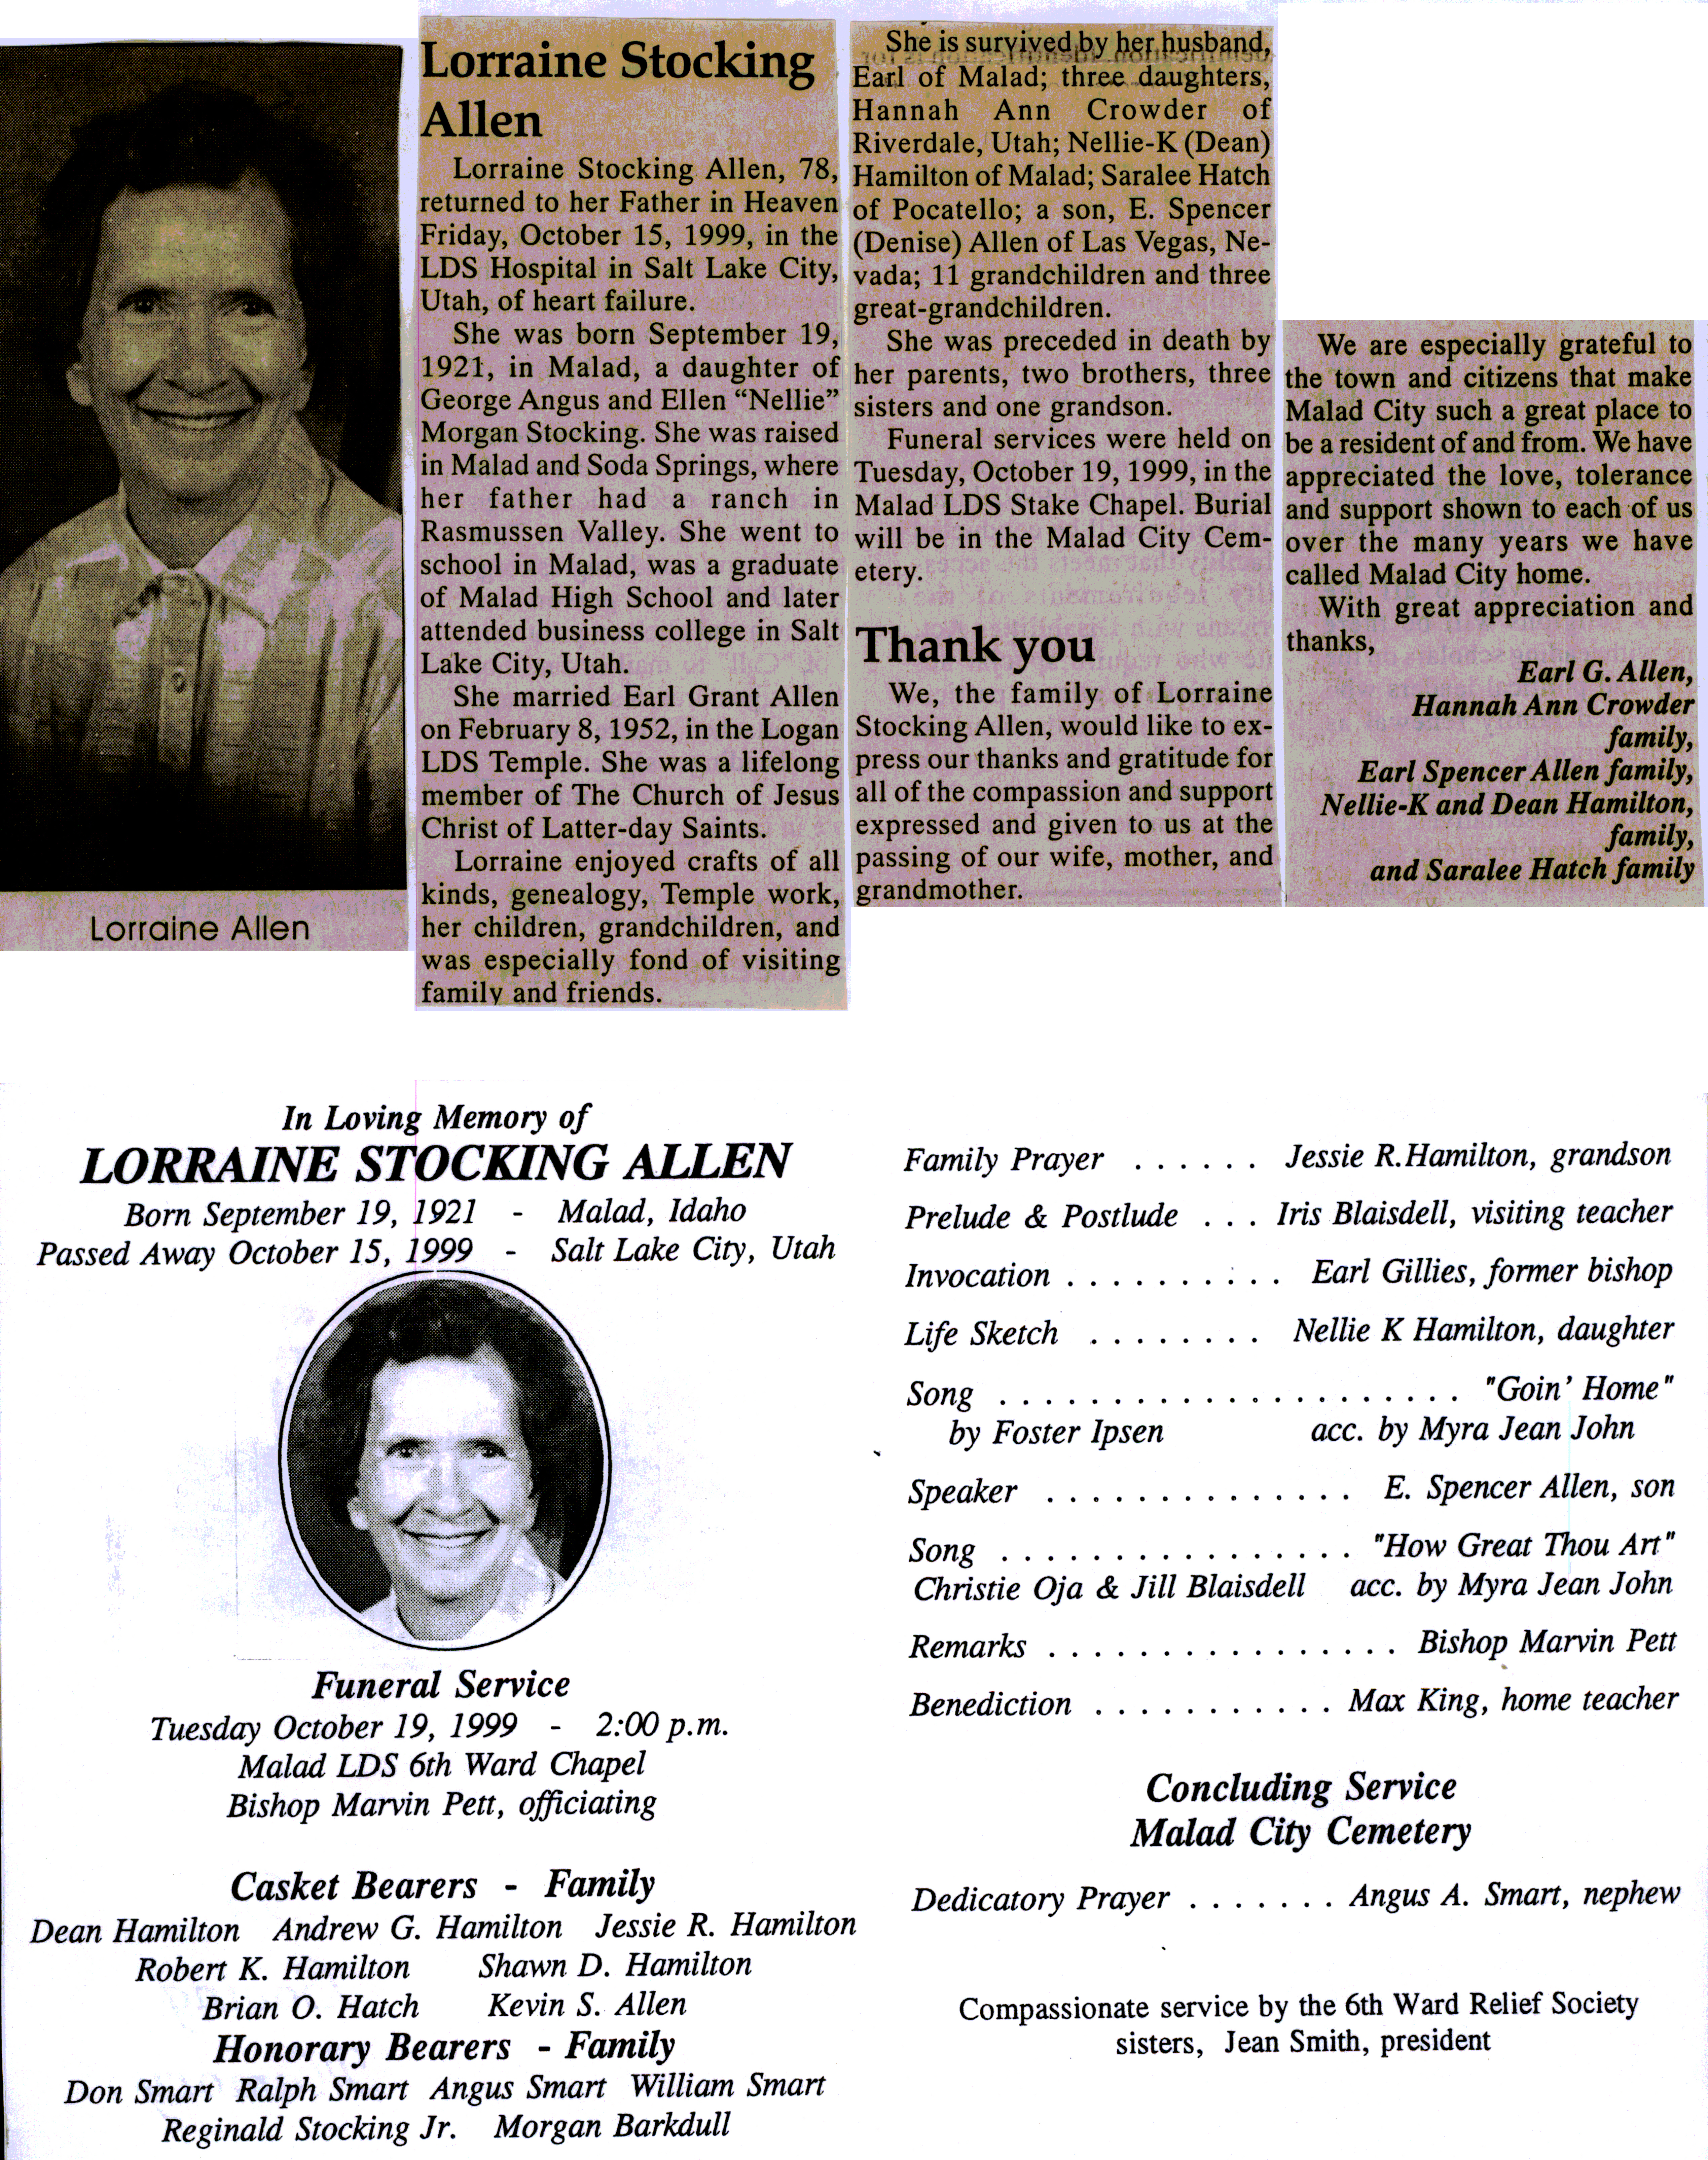 Lorraine Stocking Allen obit and program